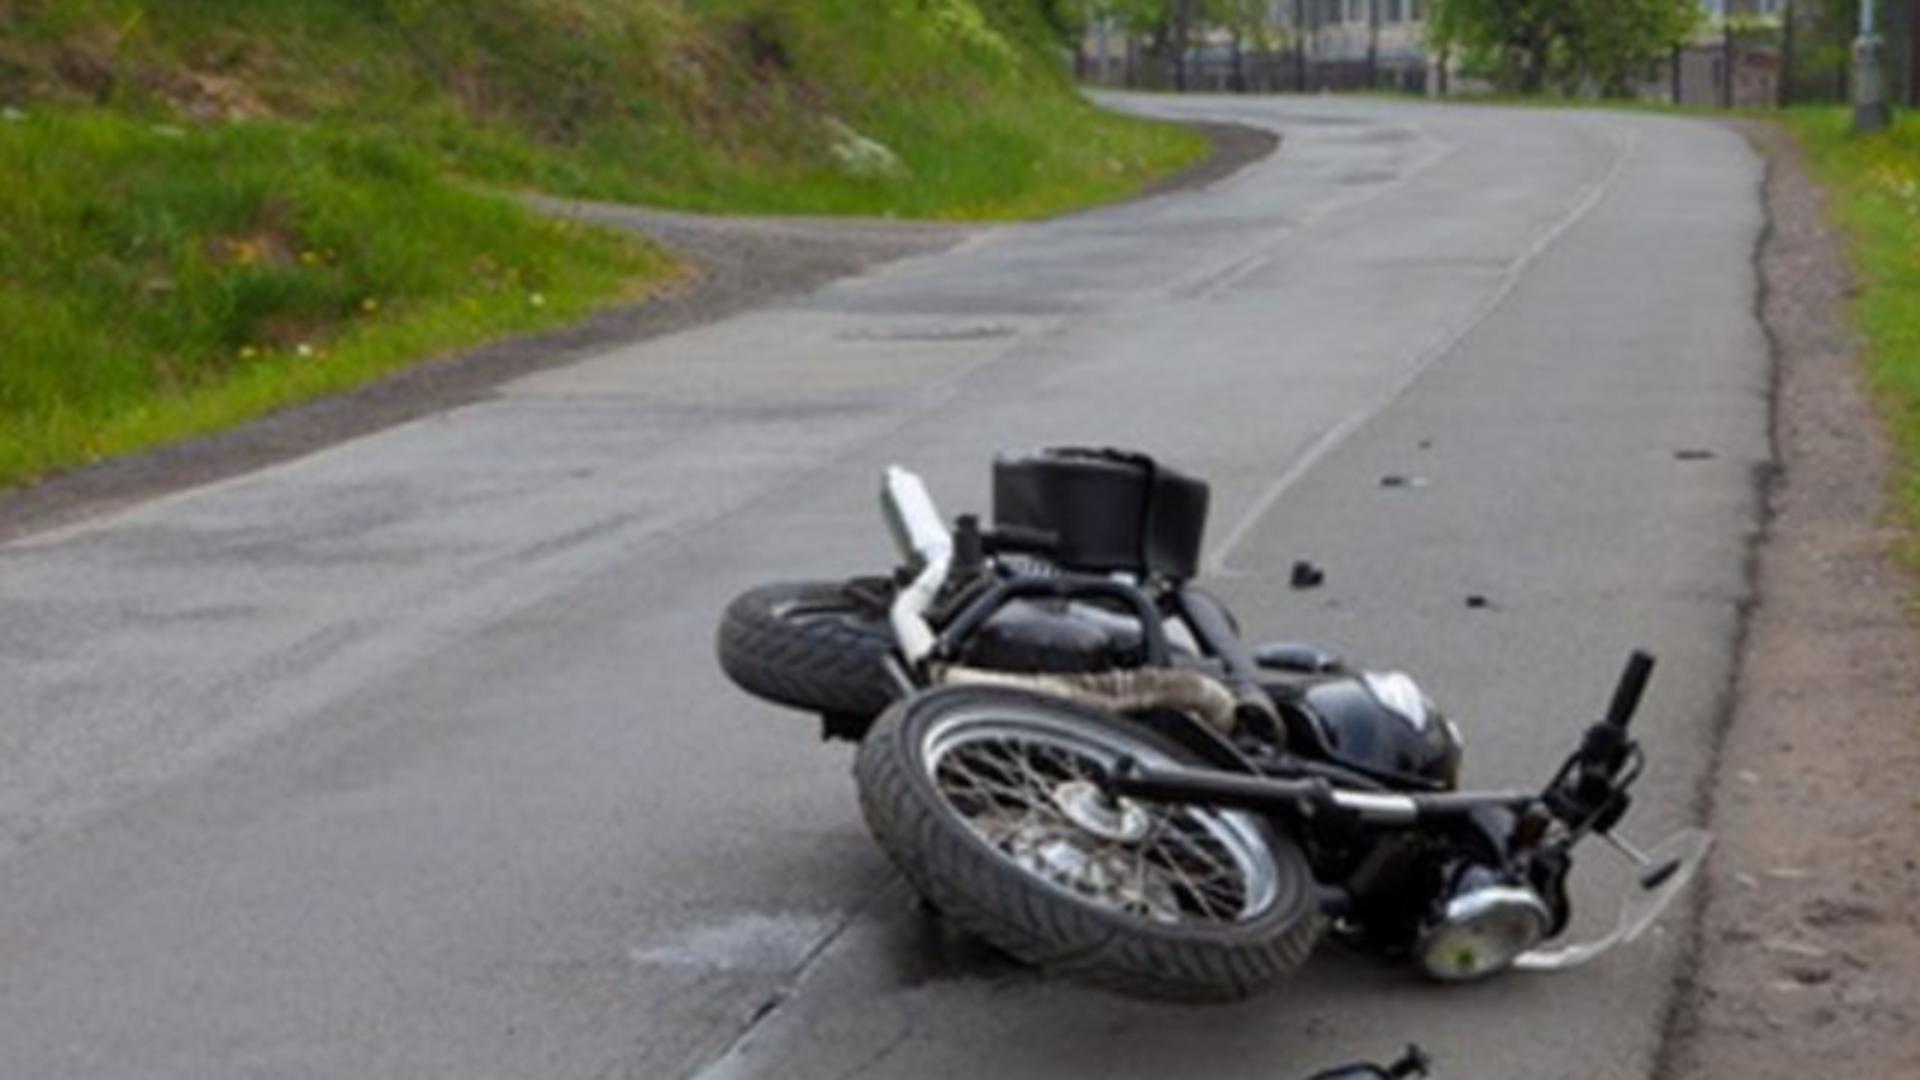 Accidente grave pe șoselele din România - 2 motocicliști au murit după ciocniri violente în trafic Foto ilustrativ